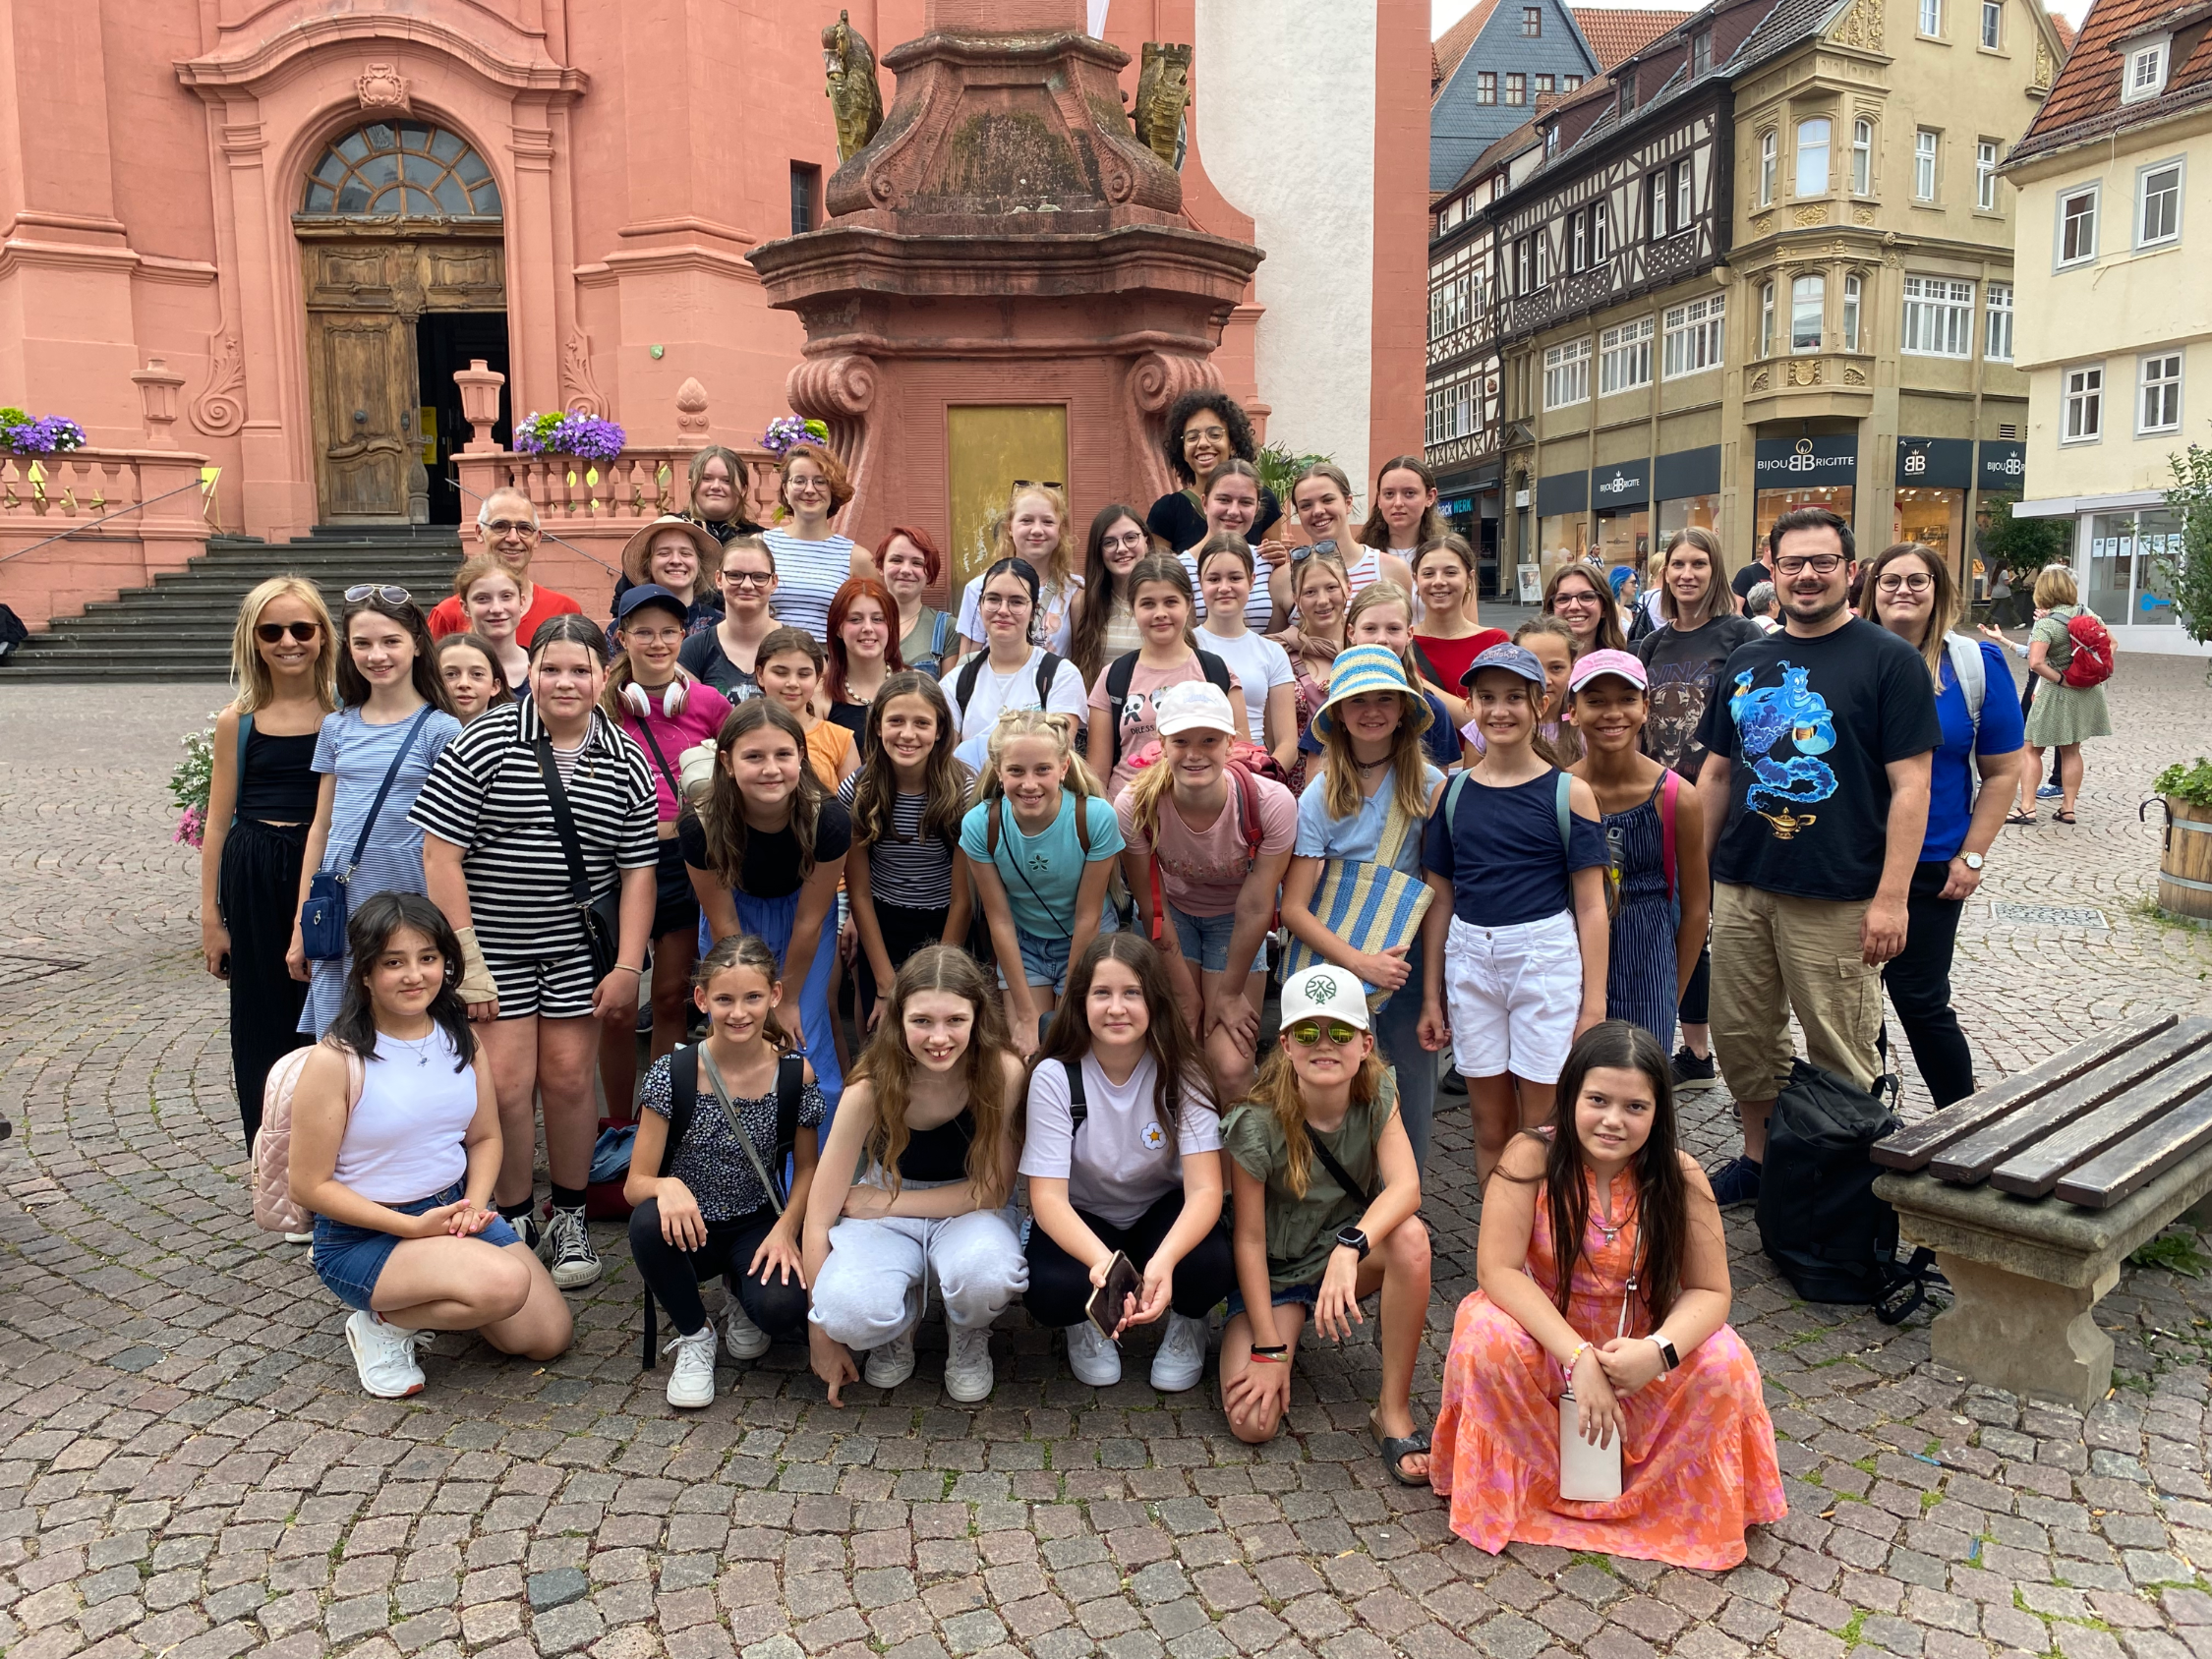 Gruppenfoto vor der Stadtpfarrkirche in Fulda